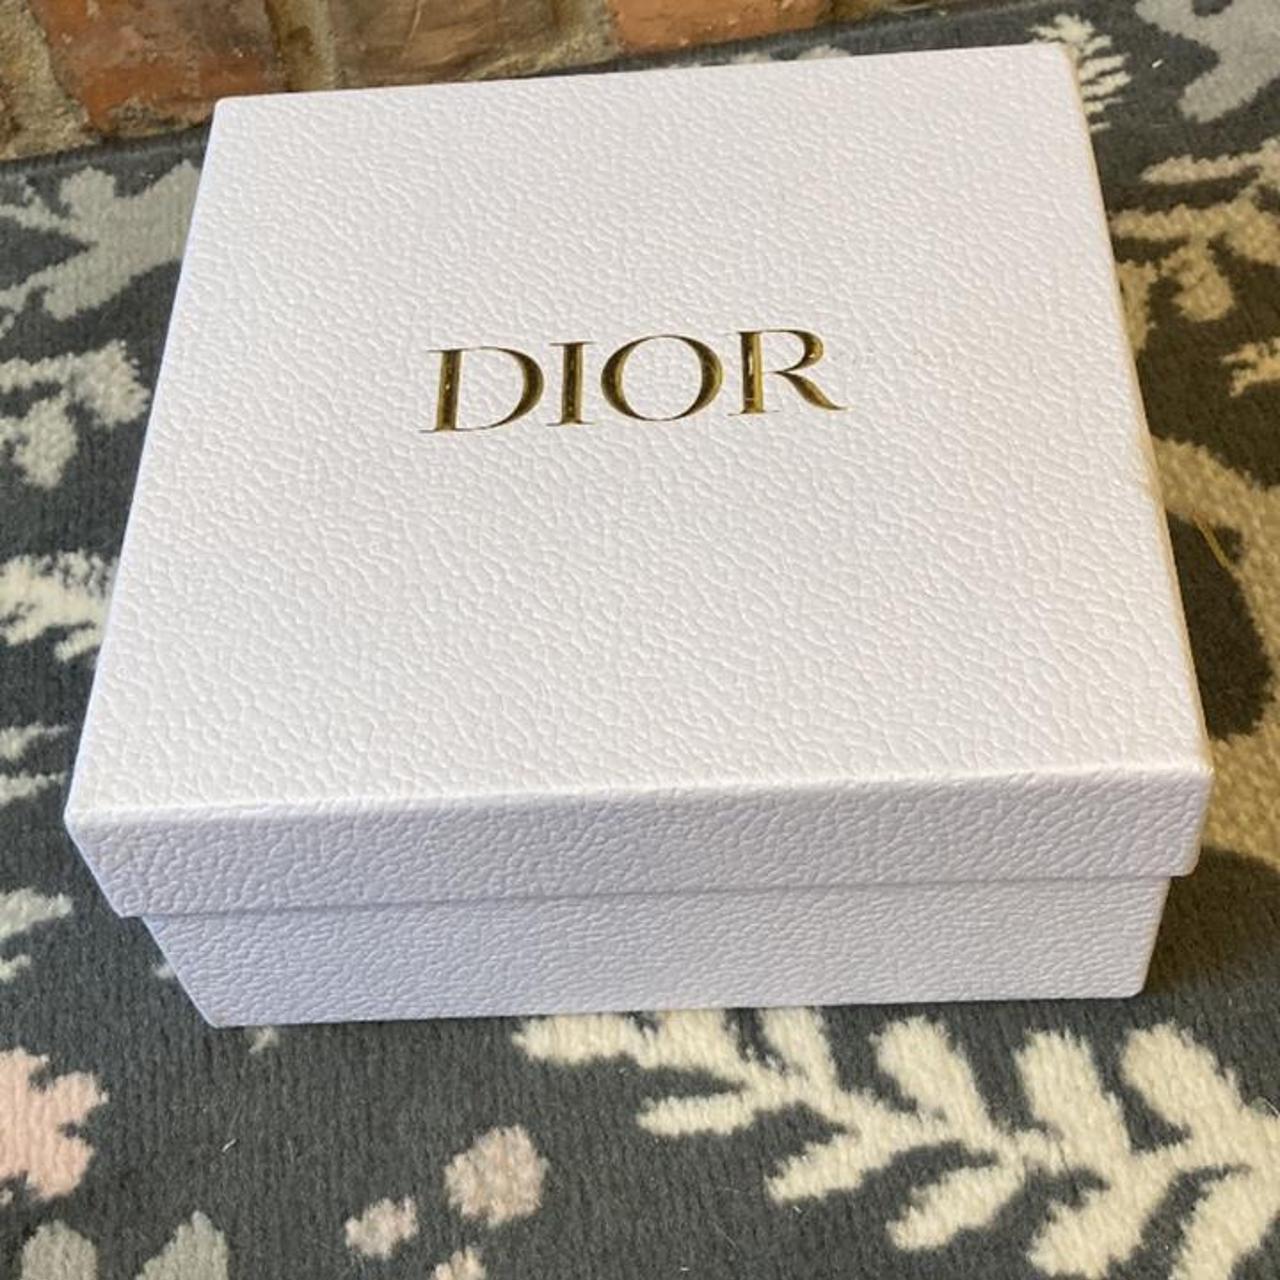 Dior empty box medium size 22cm by 22cm by 10cm... - Depop